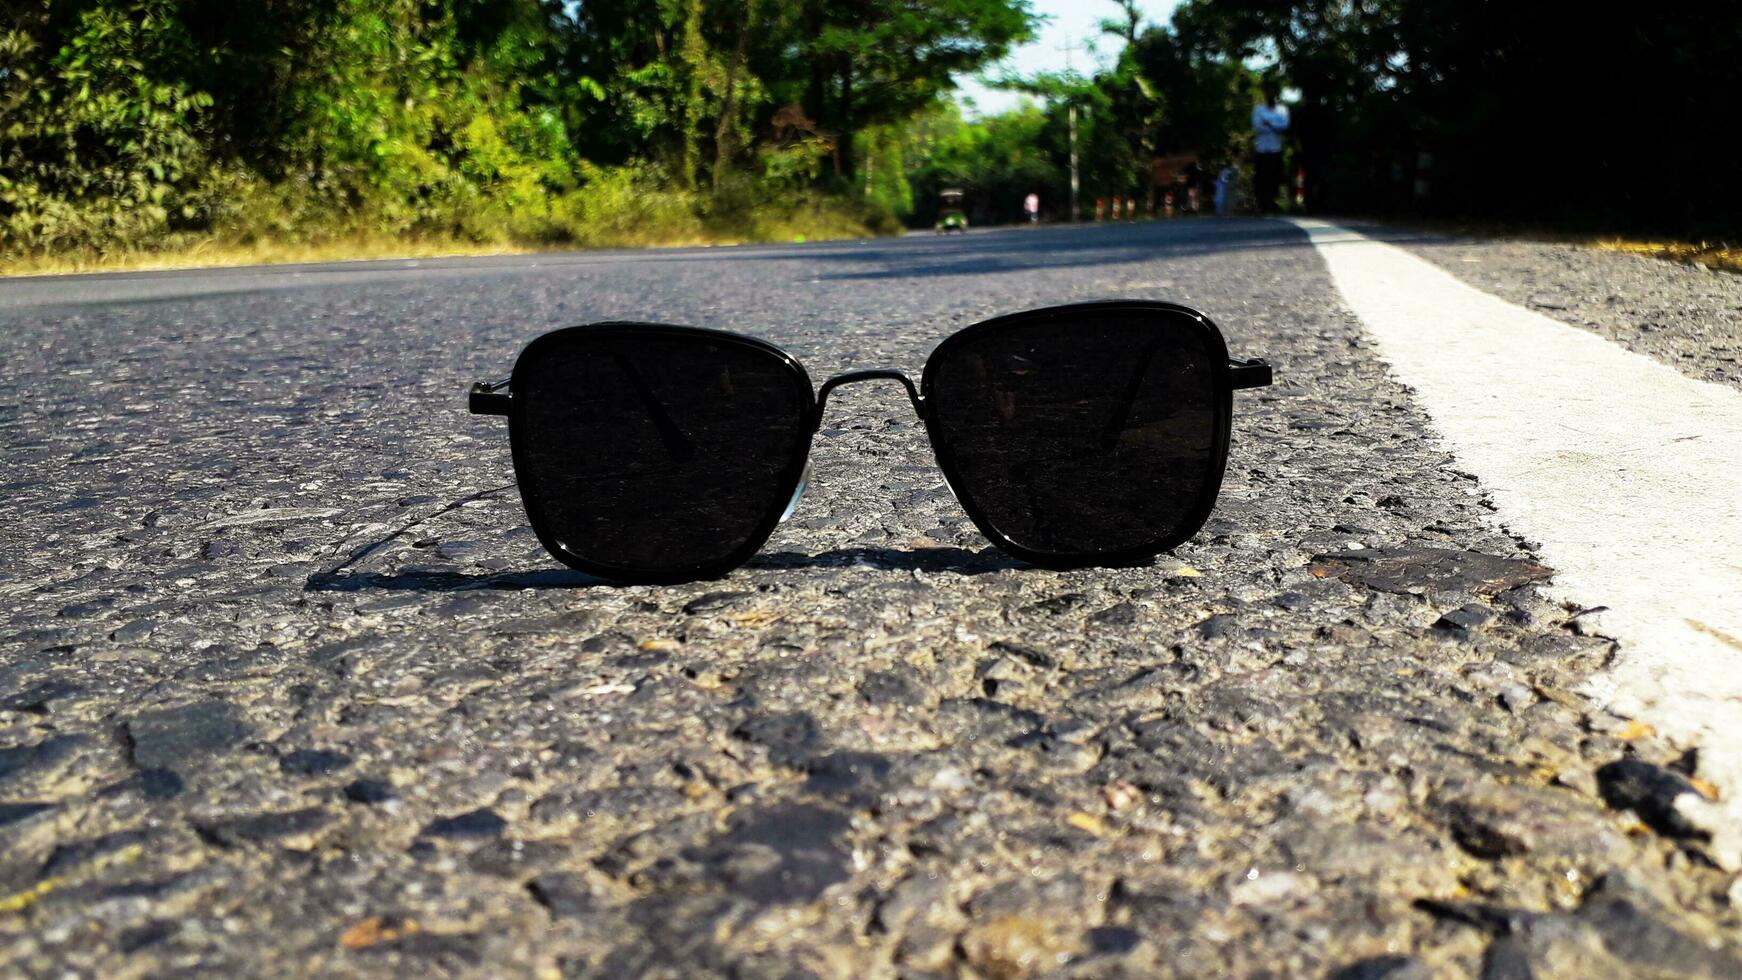 oculos de sol em rodovia estrada foto